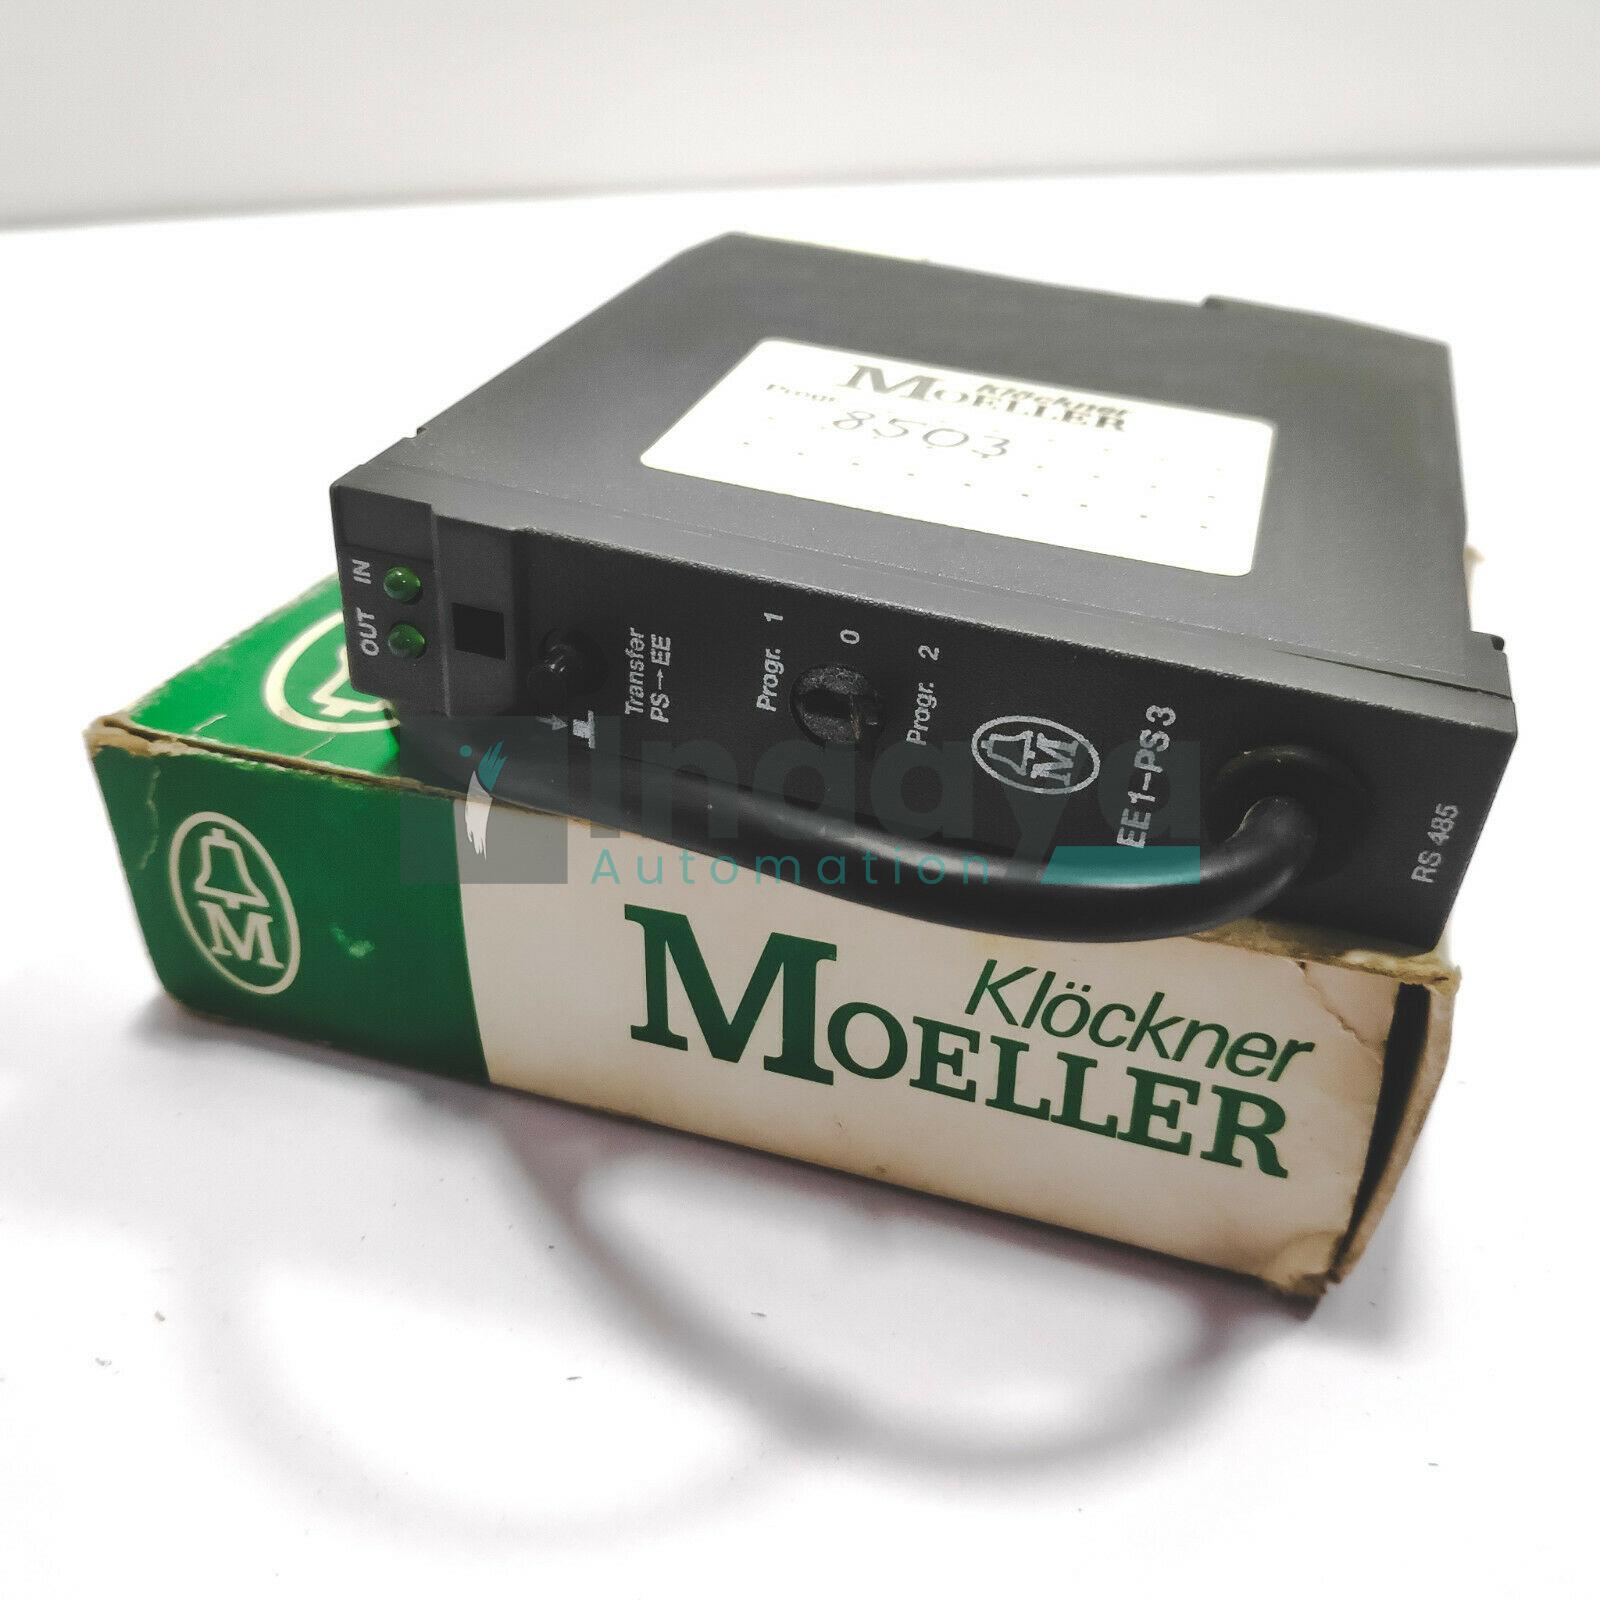 KLOCKNER MOELLER EE1-PS3 EXTERNAL MEMORY MODULE